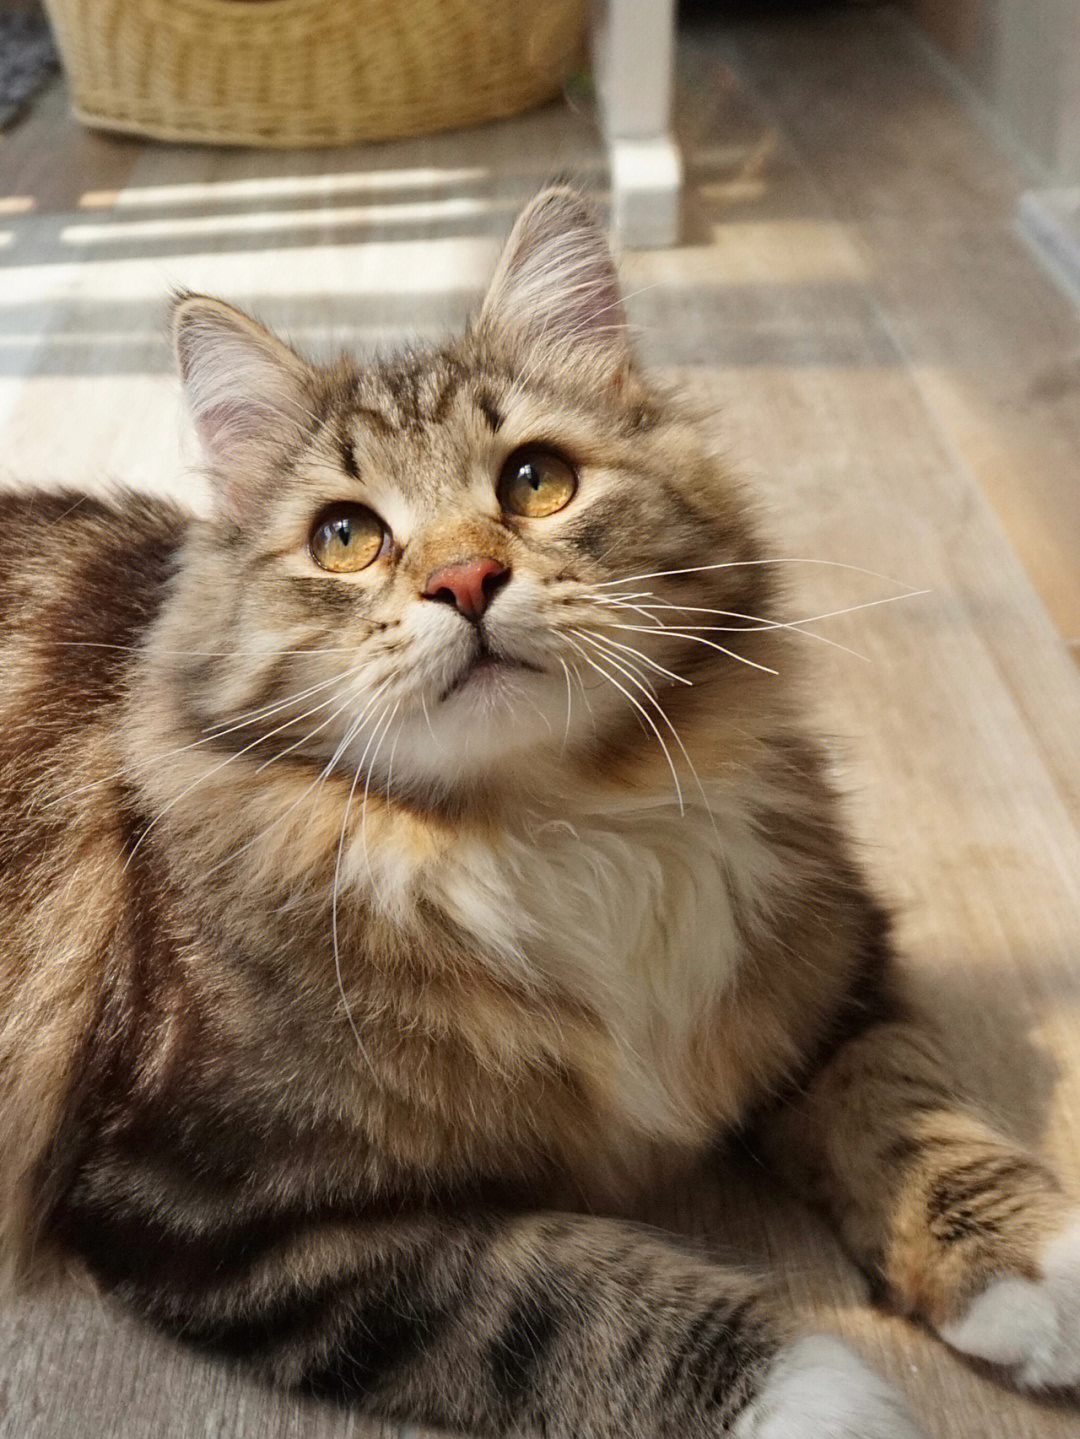 西伯利亚森林猫蜂蜜般的琥珀色眼睛